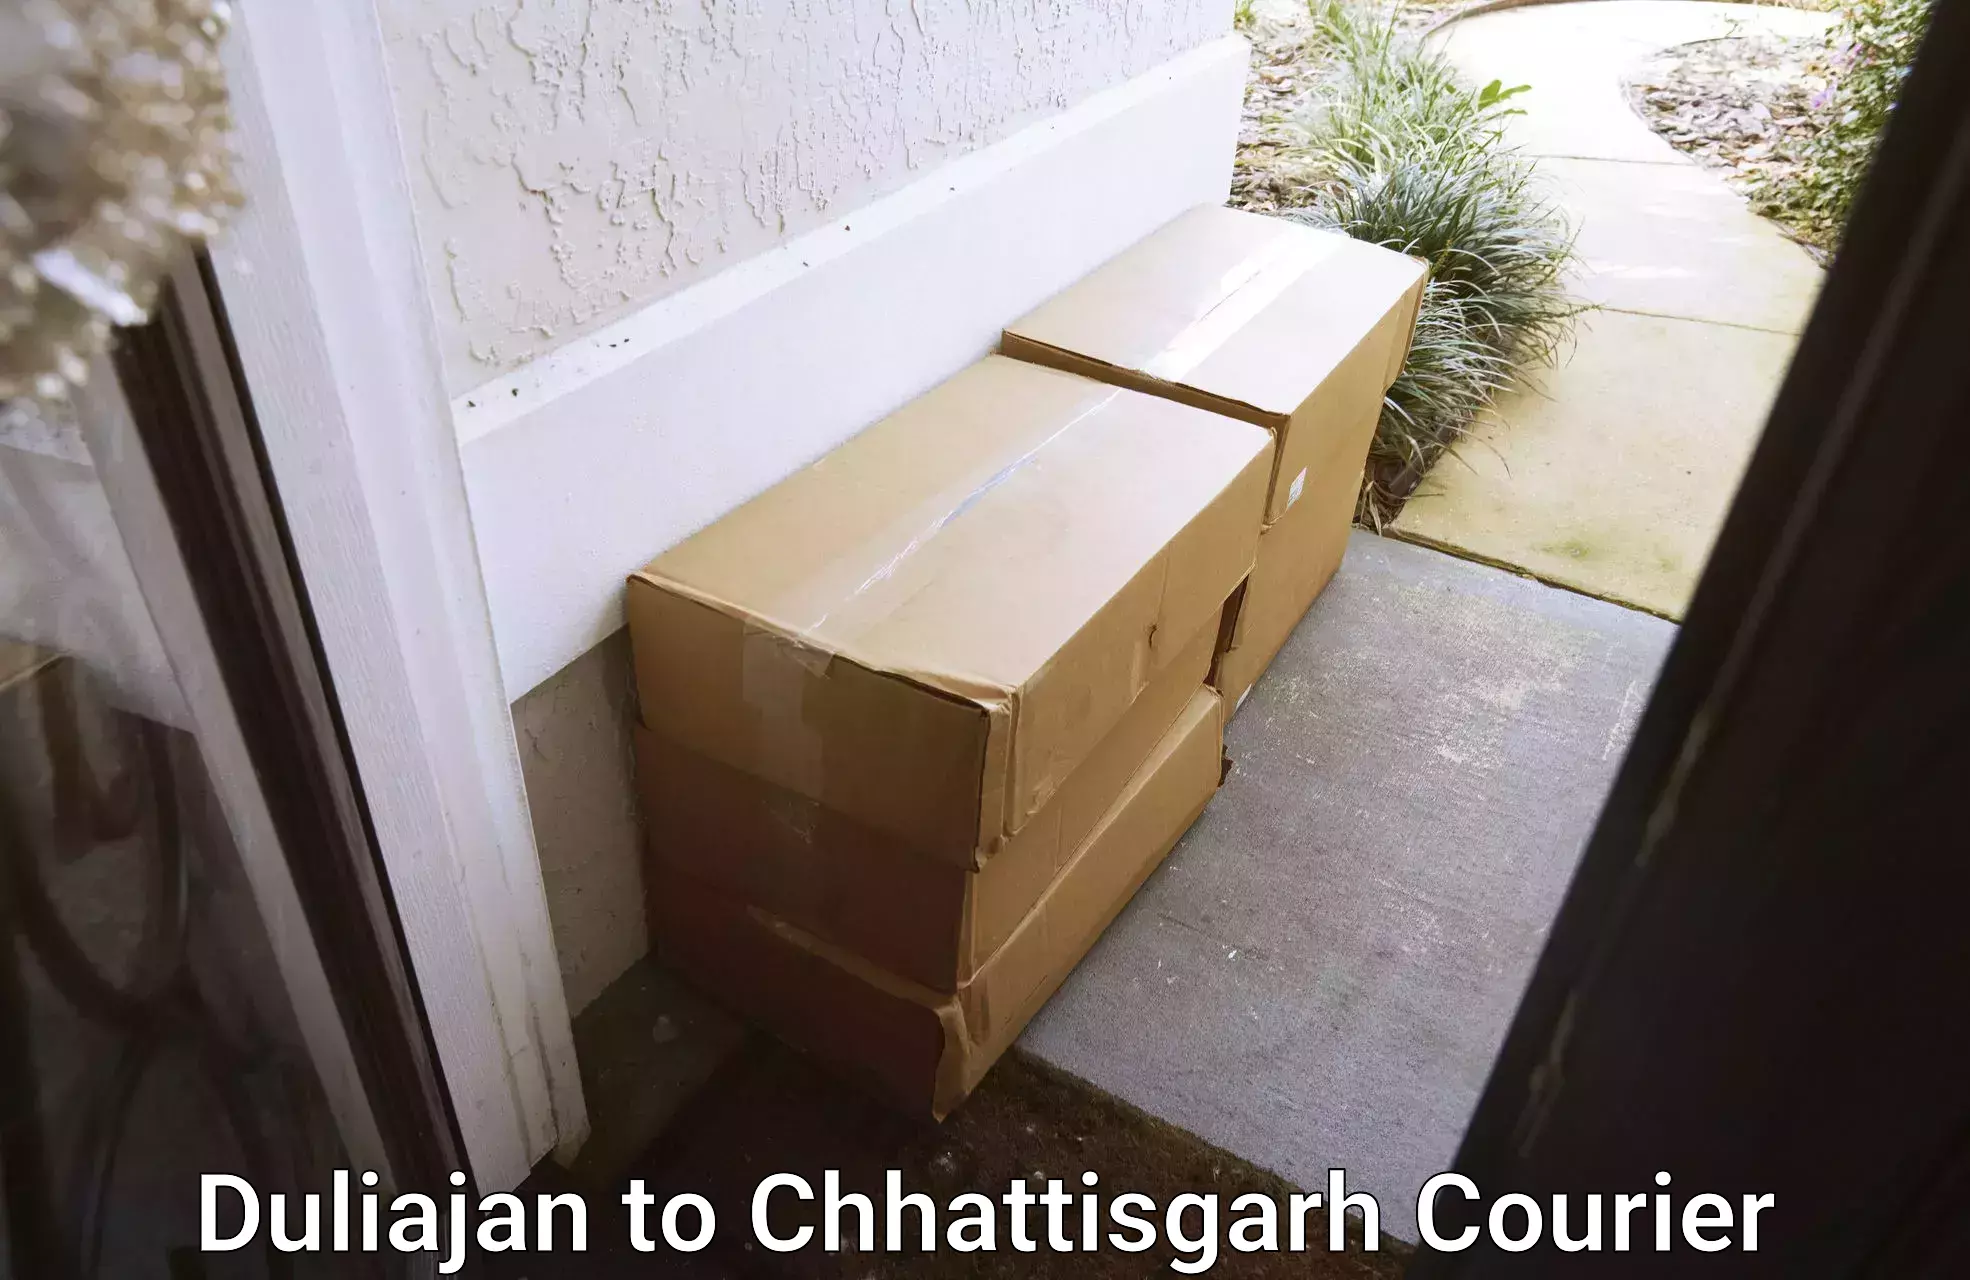 Local delivery service Duliajan to Chhattisgarh